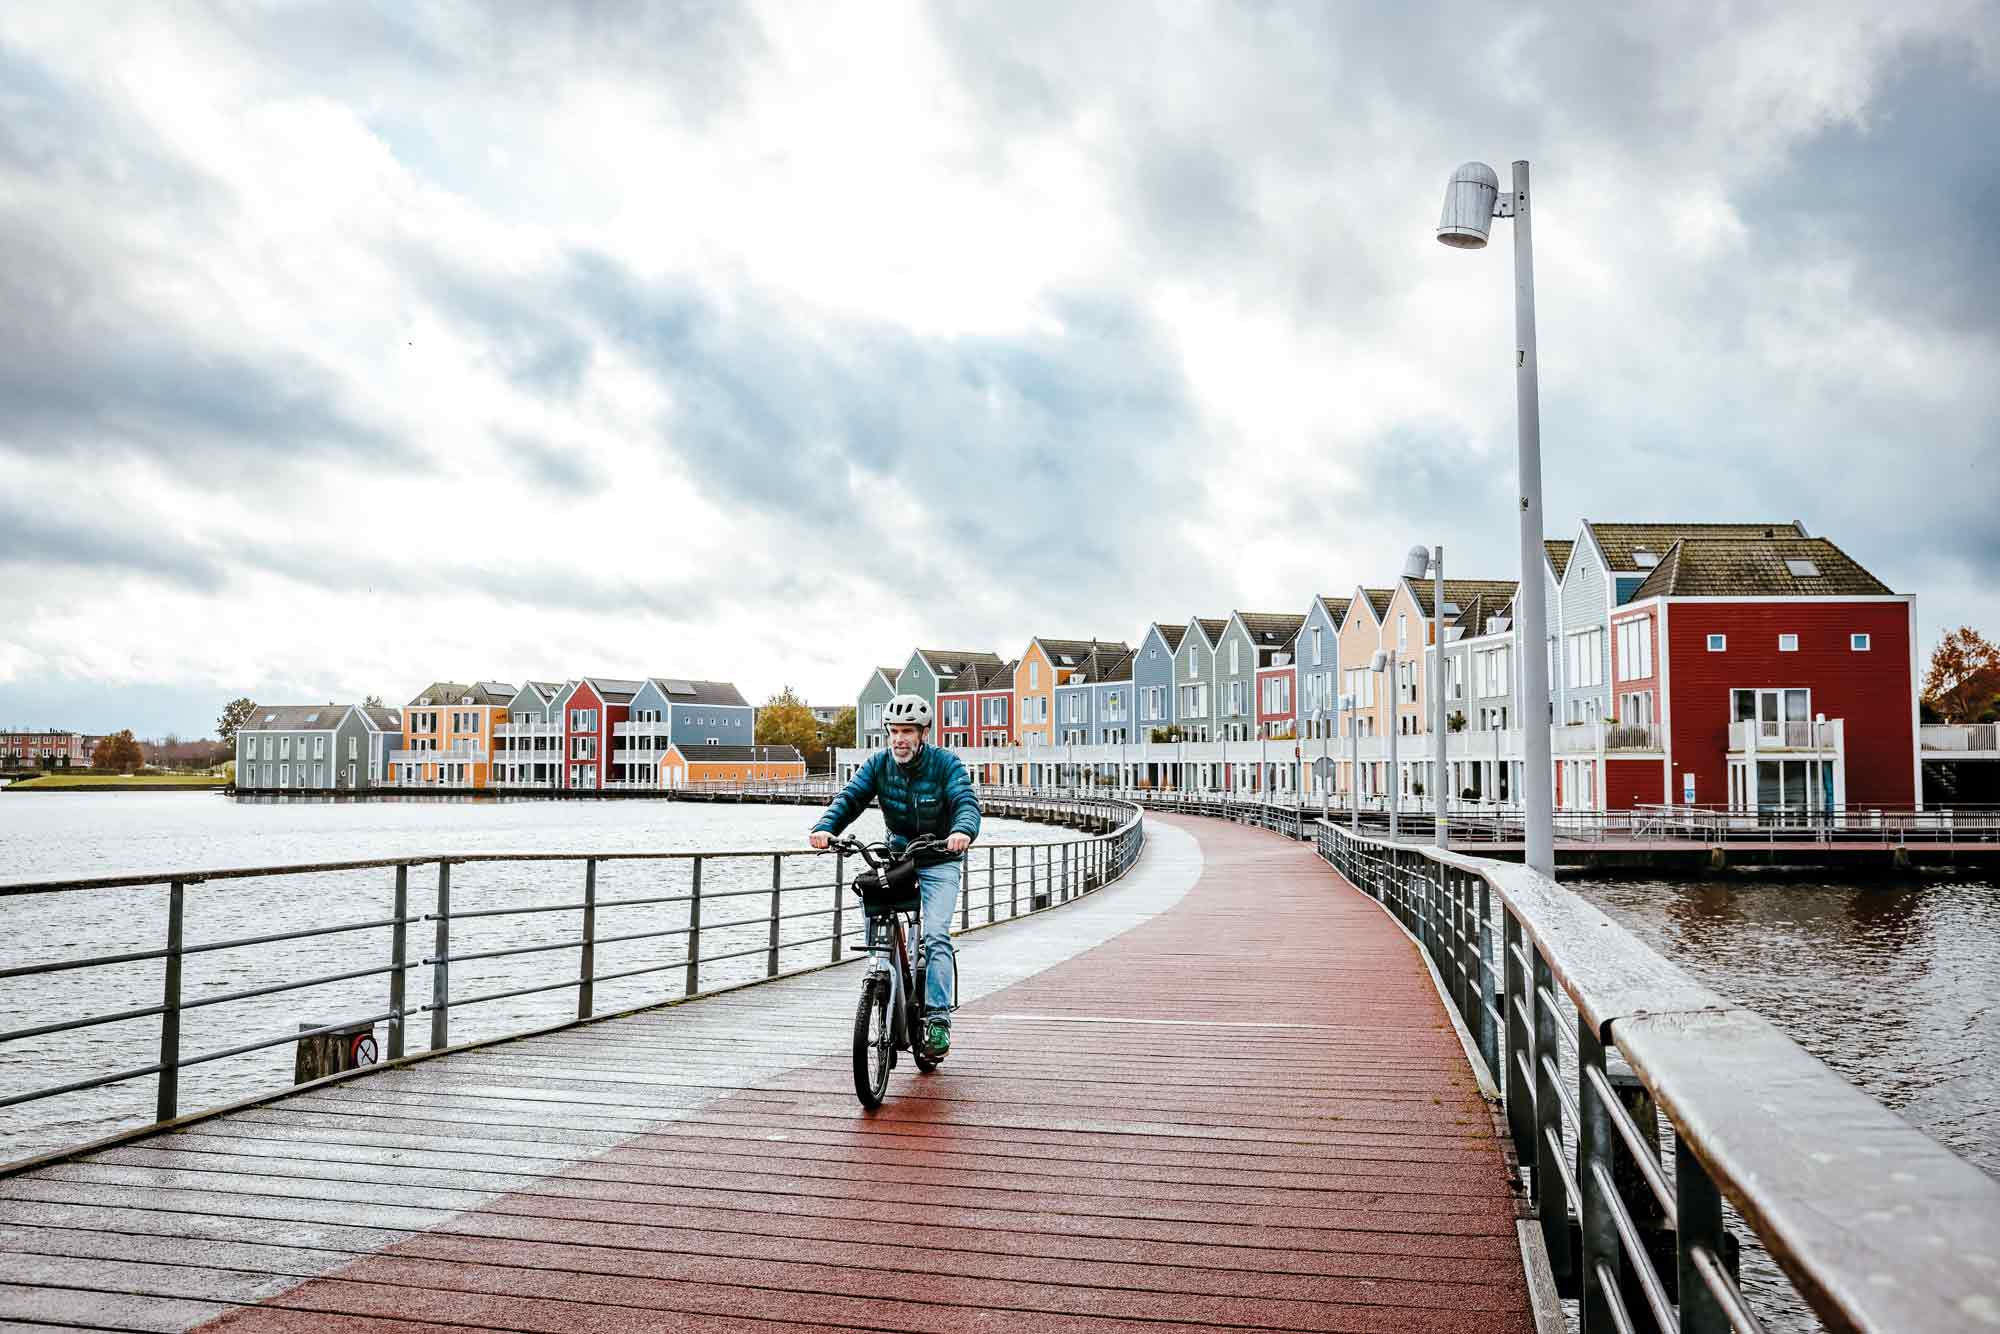 Ein weiteres abenteuer mit hans-e: wir fuhren nach utrecht und houten – zwei vorzeige-fahrradstädte in den niederlanden! Was diese städte so besonders macht, kannst du in unserer ausgabe #22 nachlesen.